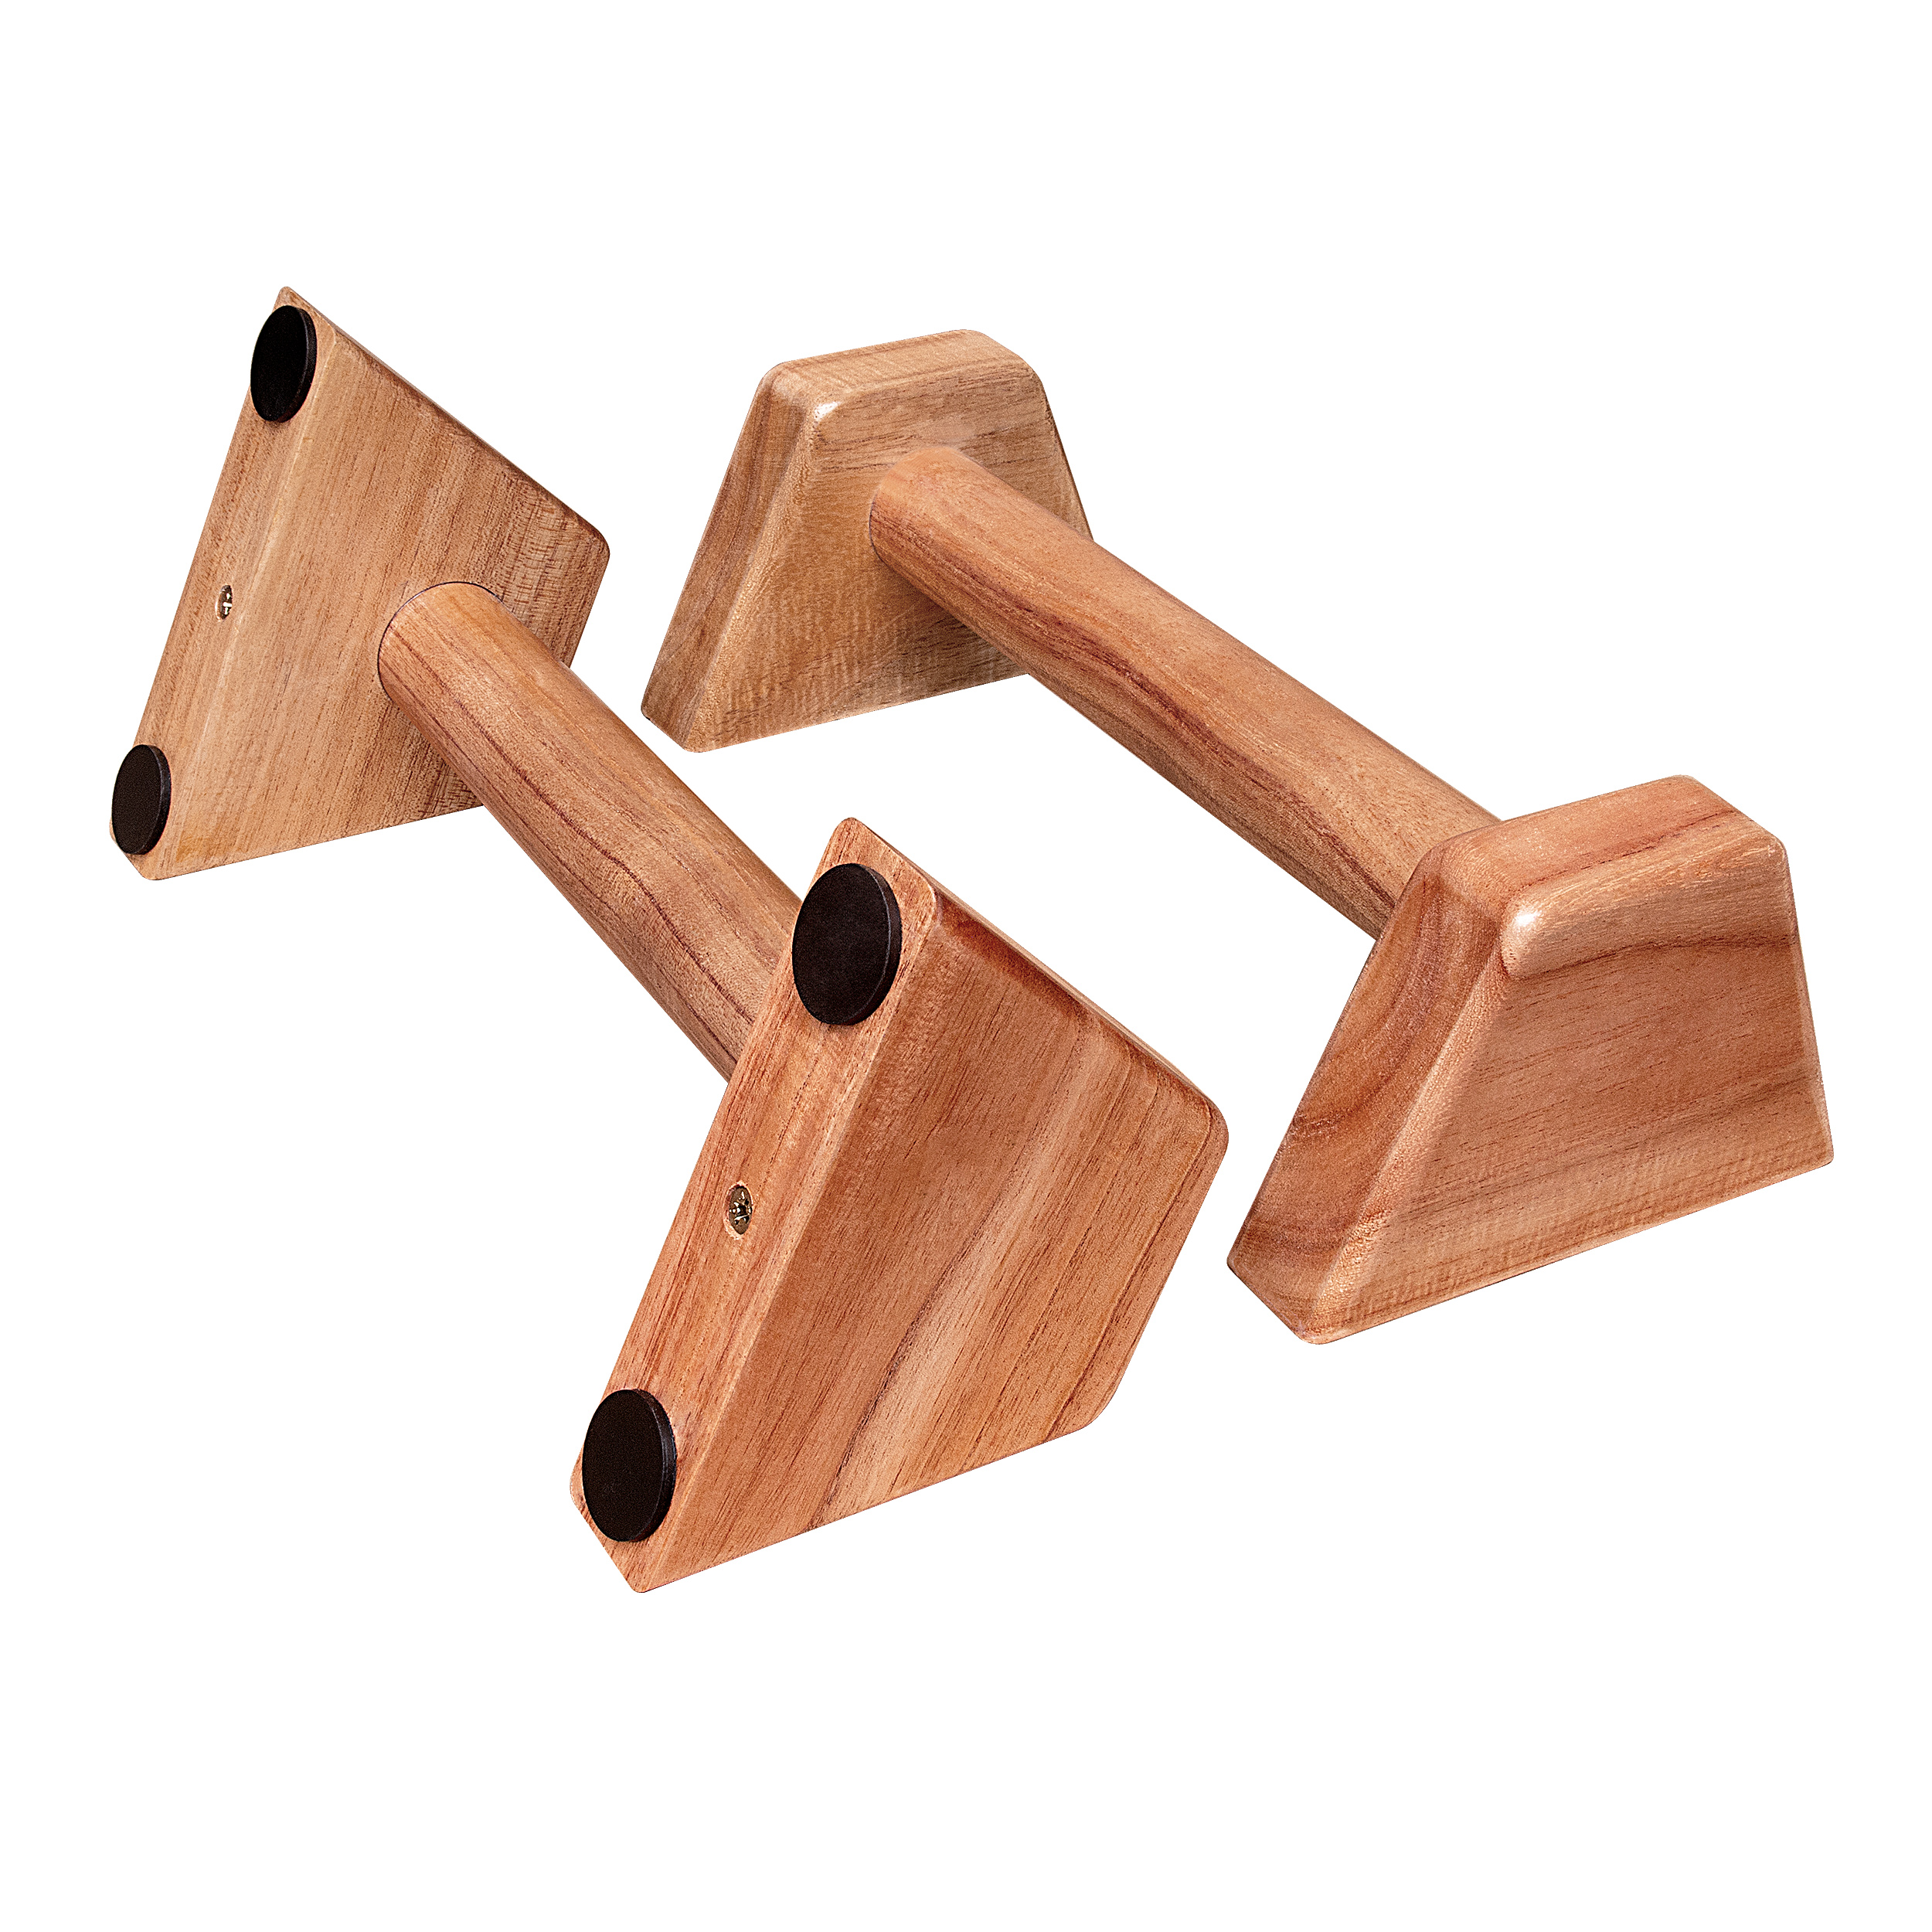 Dụng cụ chống đẩy, hít đất bằng gỗ - Parallettes Handstand PAH-02A